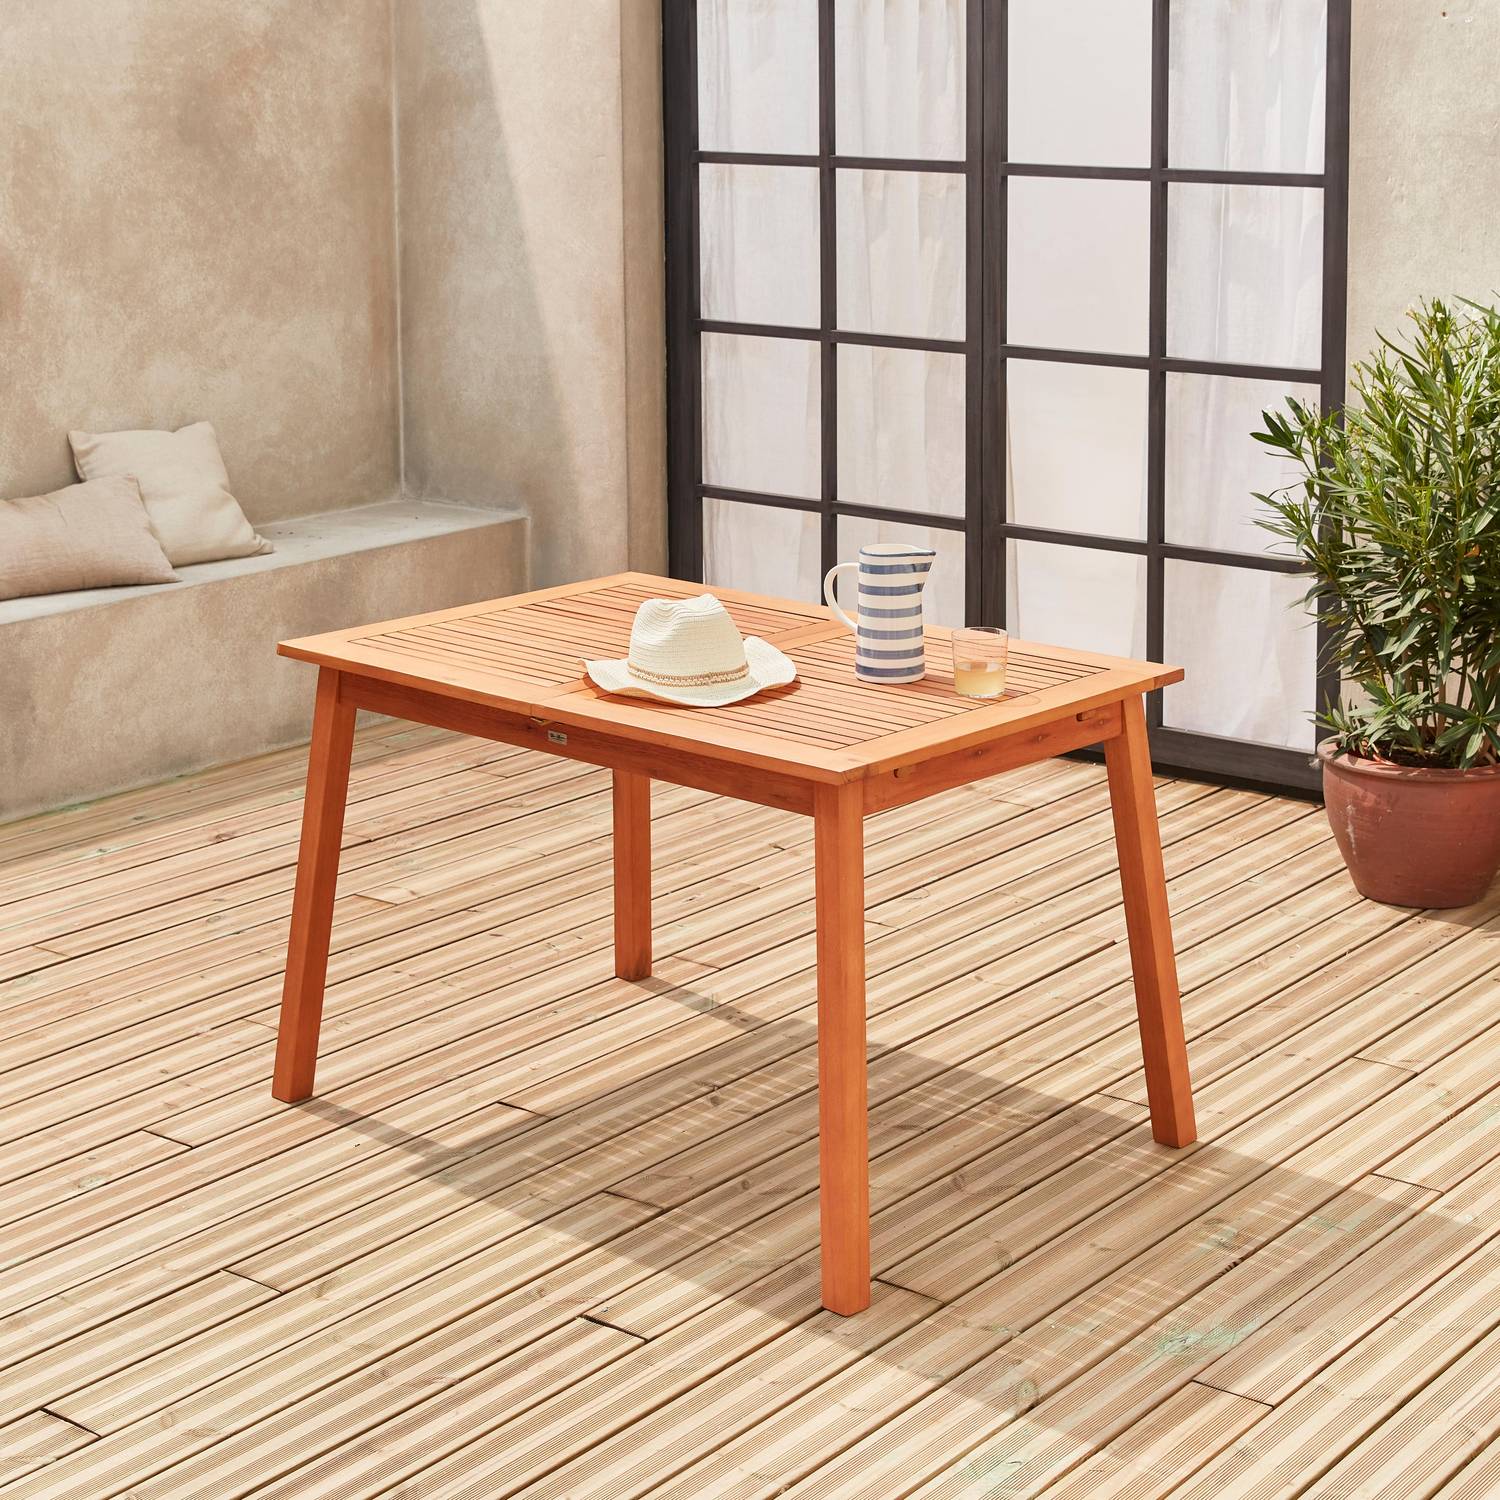 Tavolo da giardino, in legno, dimensioni: 120-180cm - modello: Almeria - Tavolo rettangolare con prolunga, eucalipto FSC Photo7